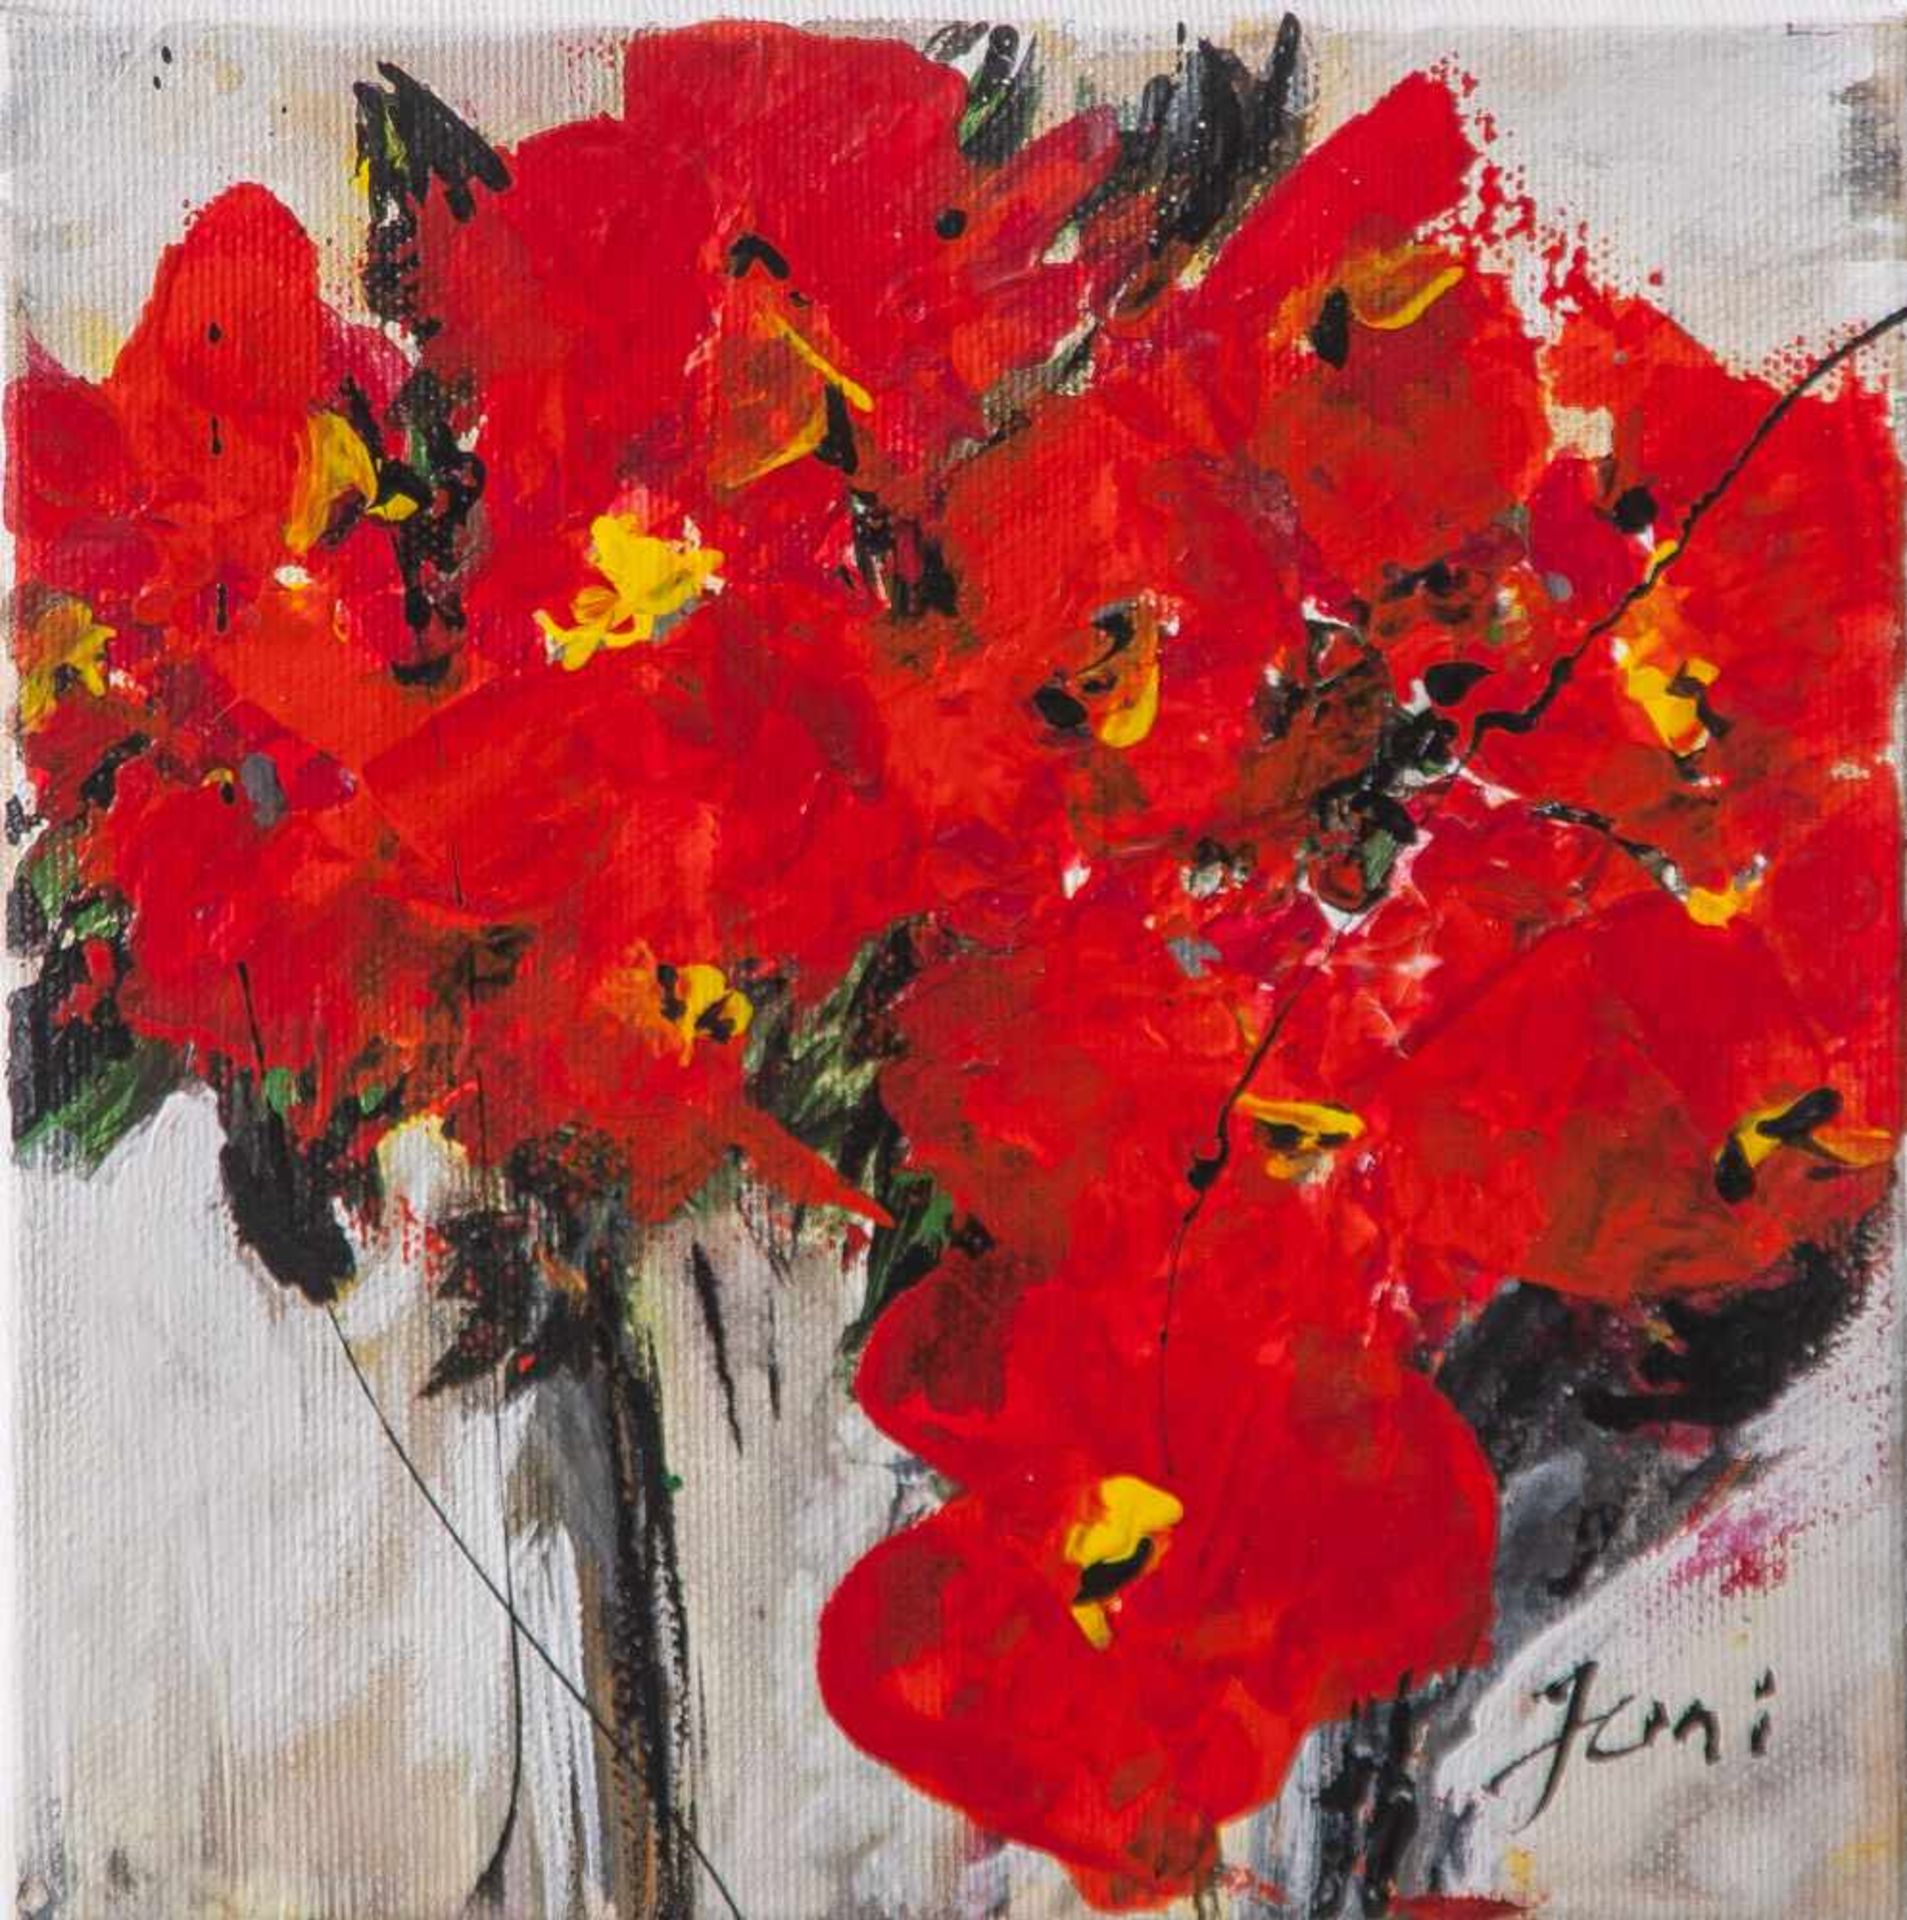 Jani, "Roter Blumenstrauß", Acryl/Lw, re. u. sign. Ca. 20 x 20 cm, auf Keilrahmen aufgezogen.